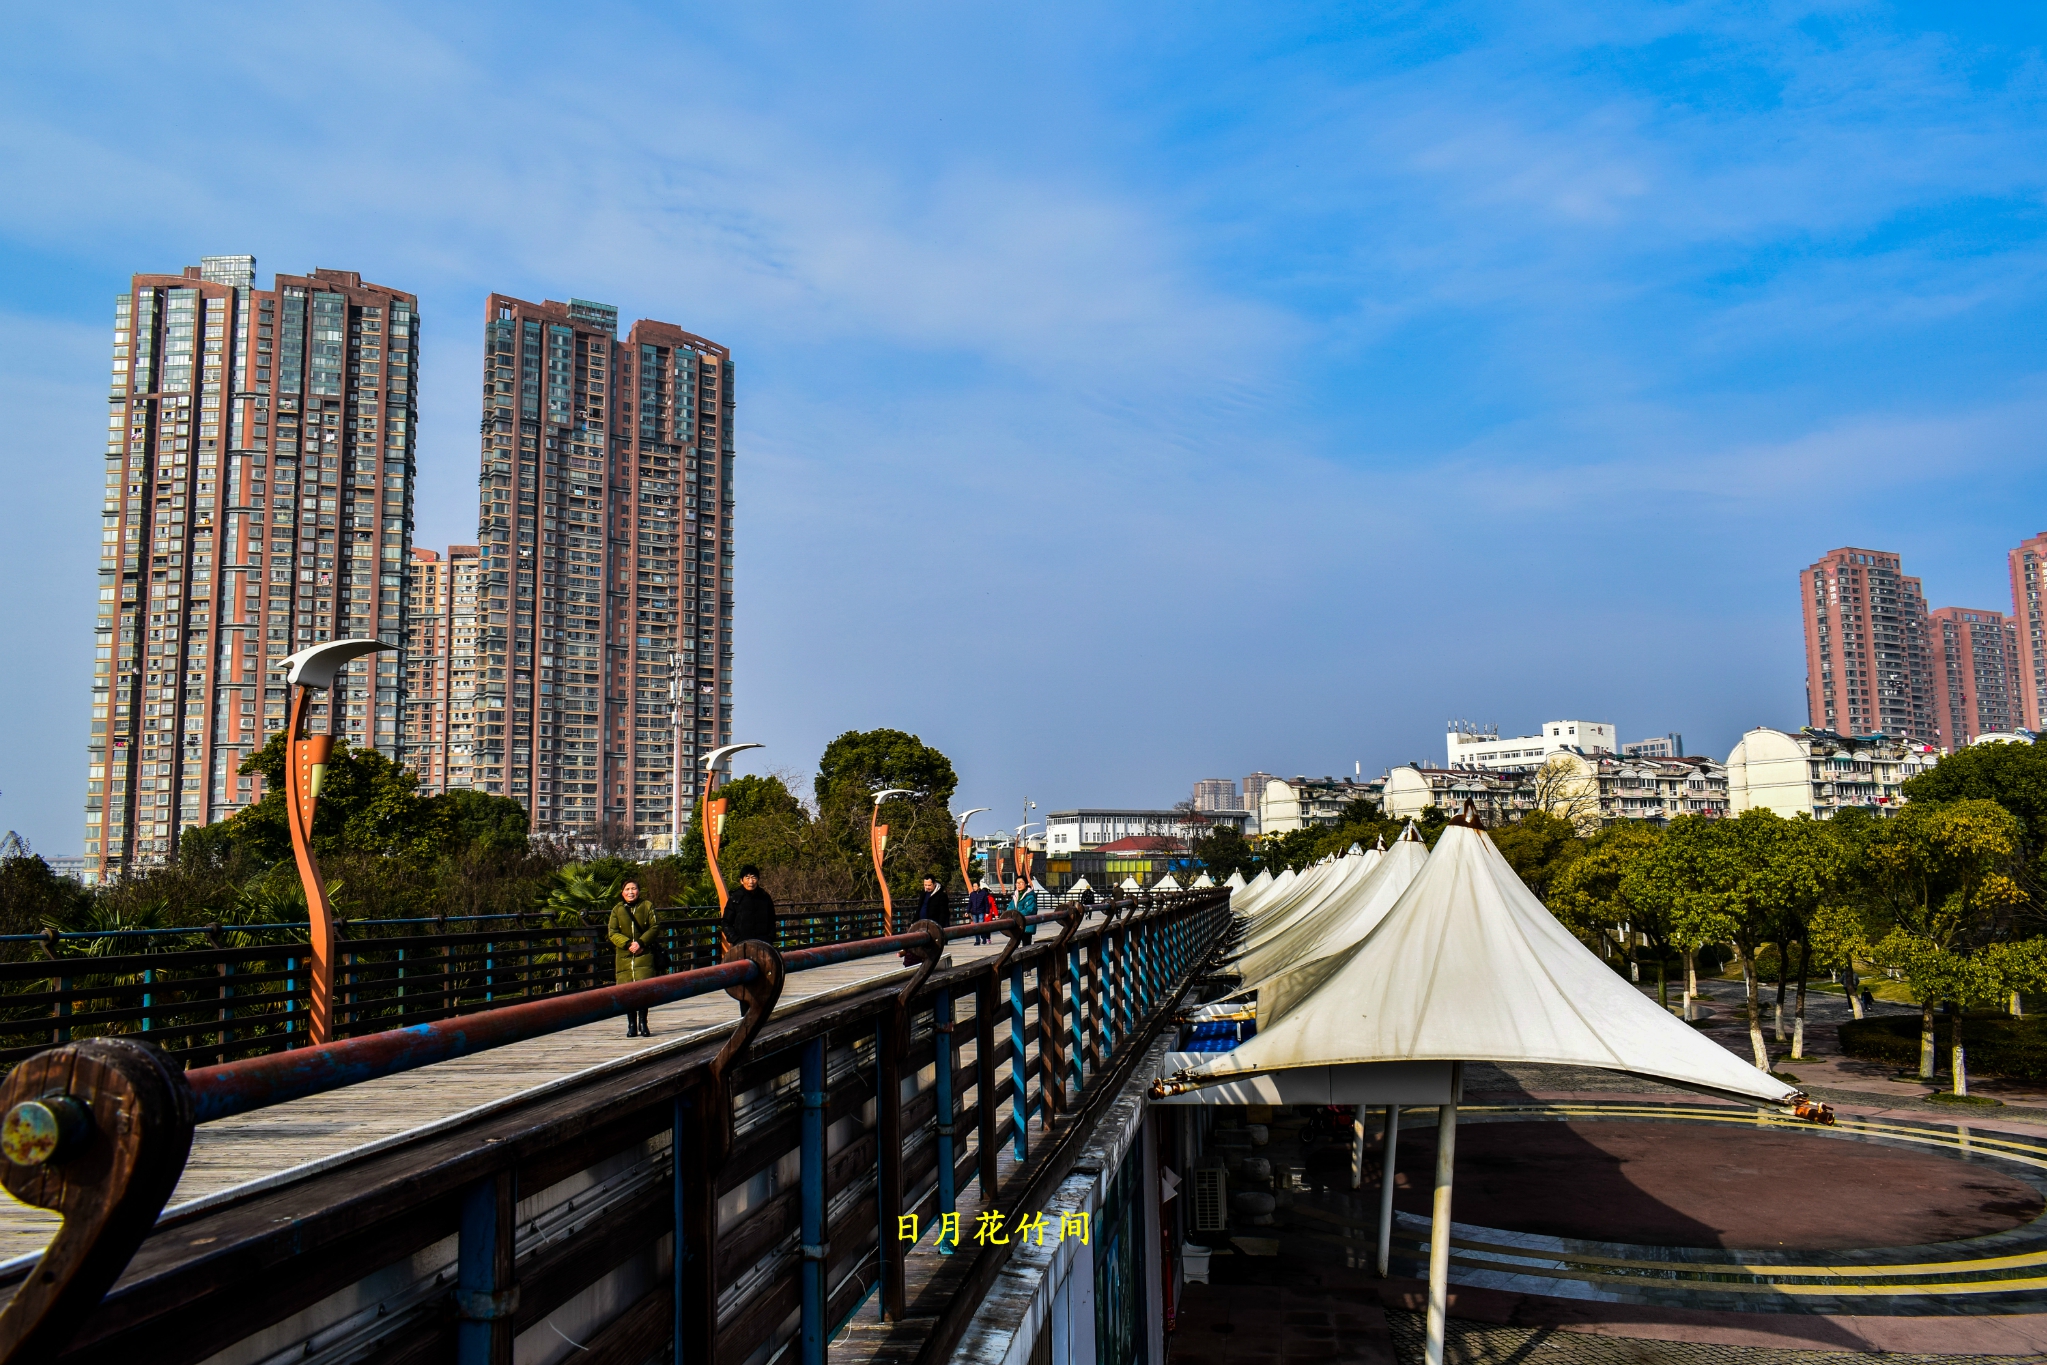 芜湖滨江公园是依靠芜湖市城西长江沿岸而建成的在这里可以看到长江和